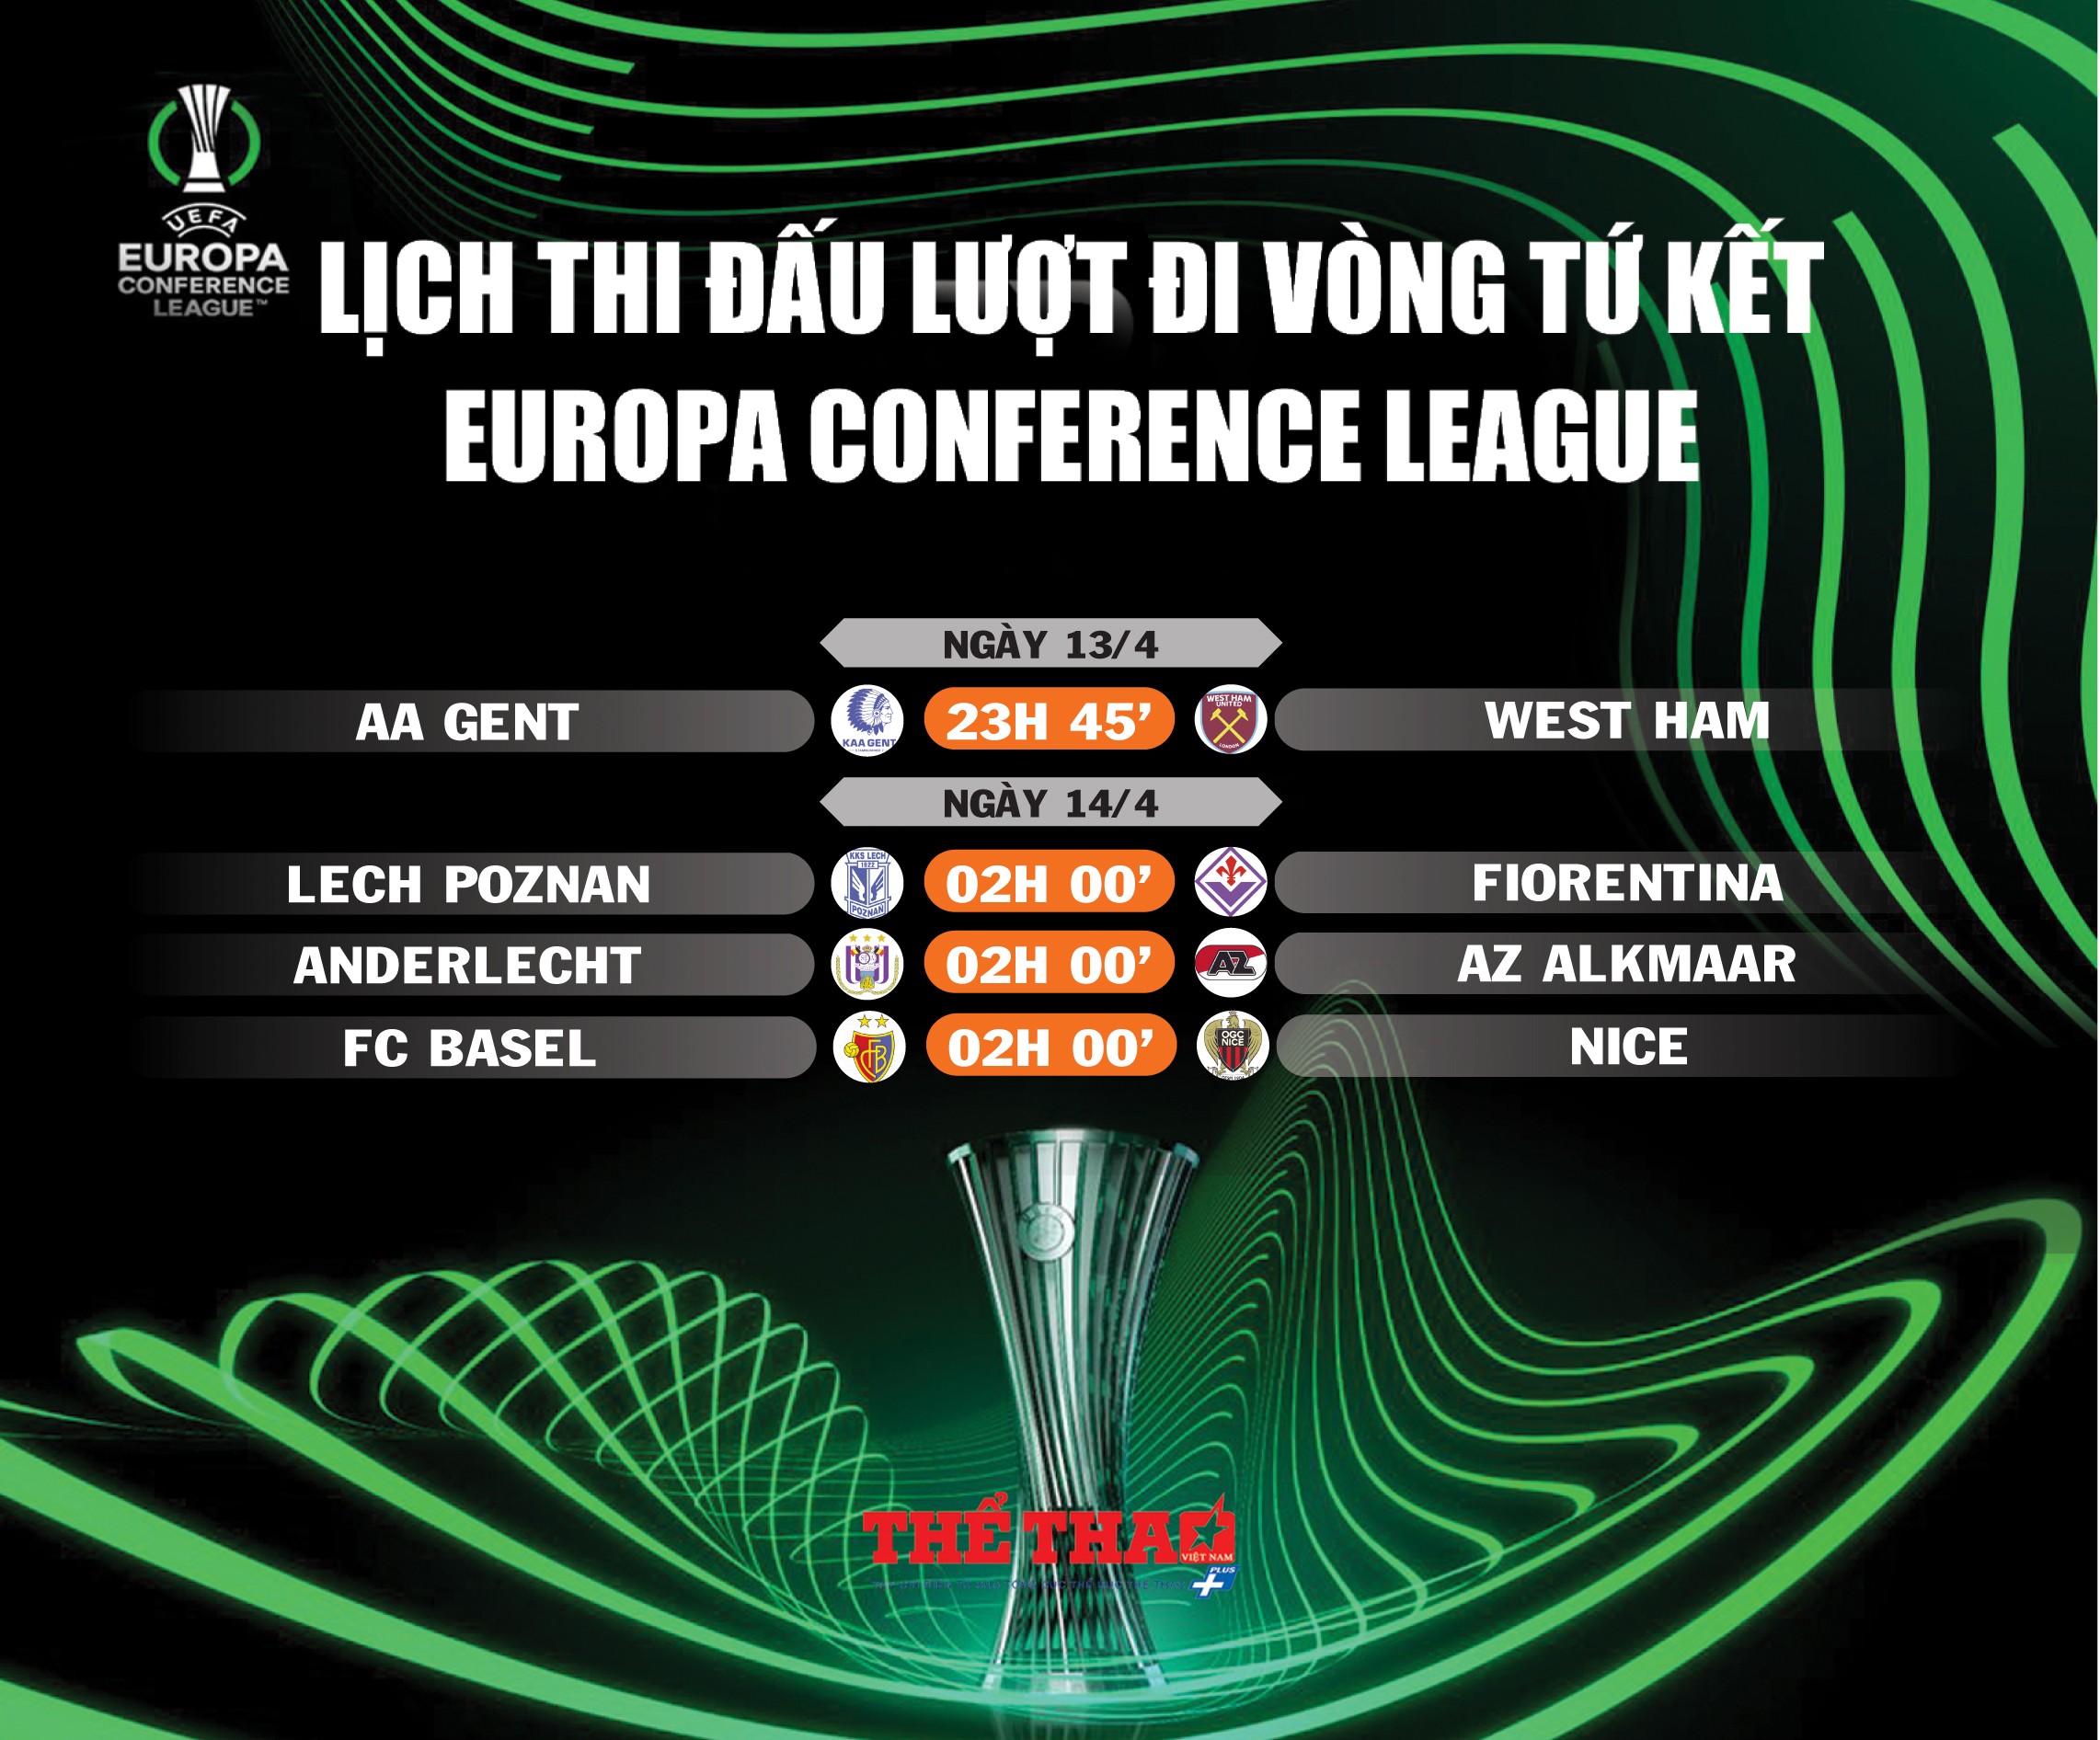 europa-conference-league-trang-14-1681198719.jpg